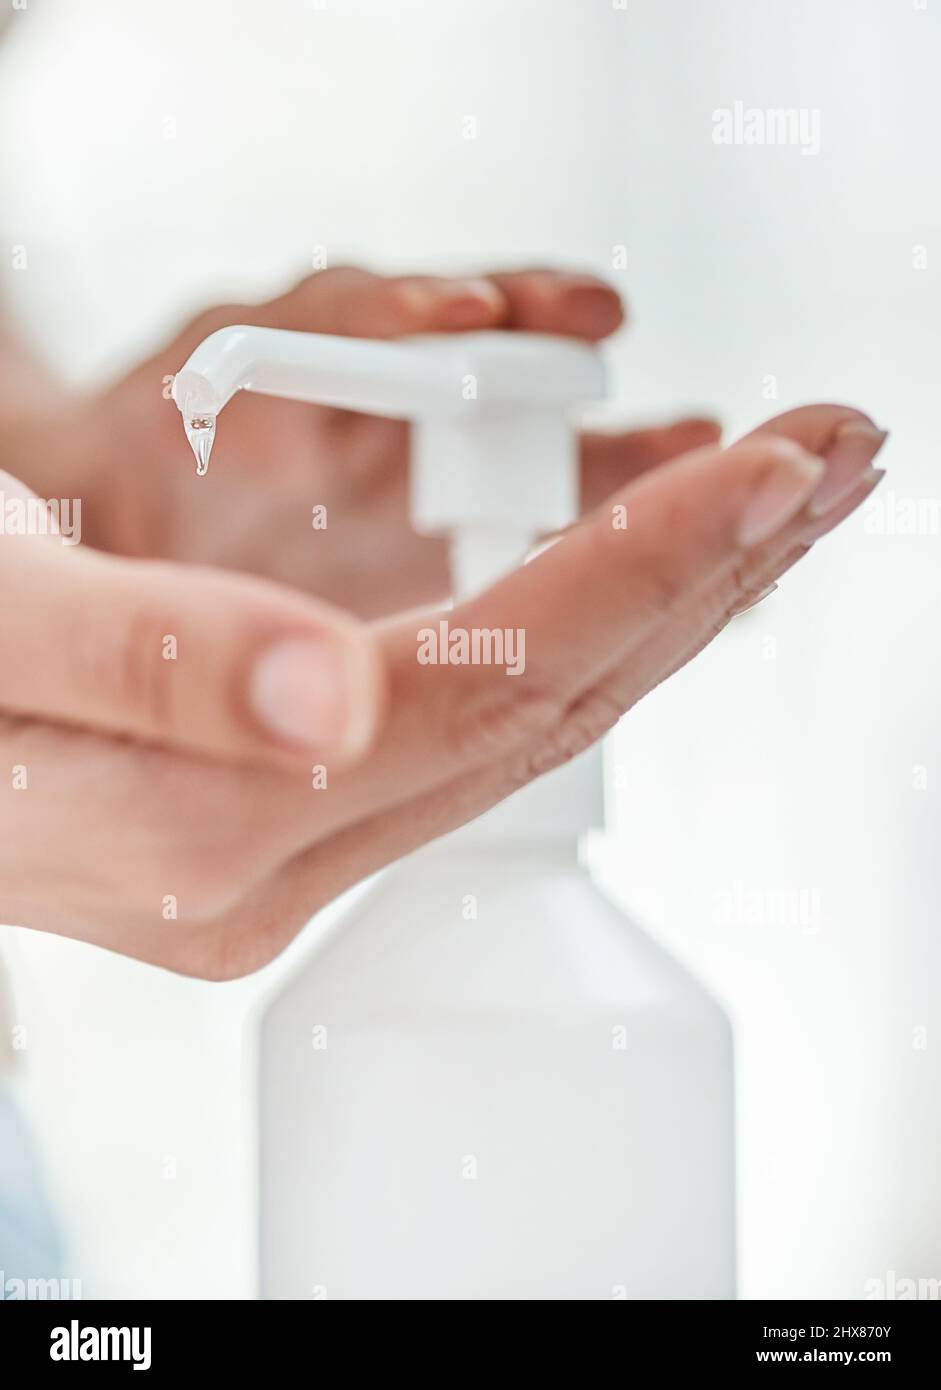 Pour que l'assainisseur pour les mains soit efficace, il doit être utilisé correctement. Photo d'une femme non reconnaissable qui désinfecte ses mains. Banque D'Images